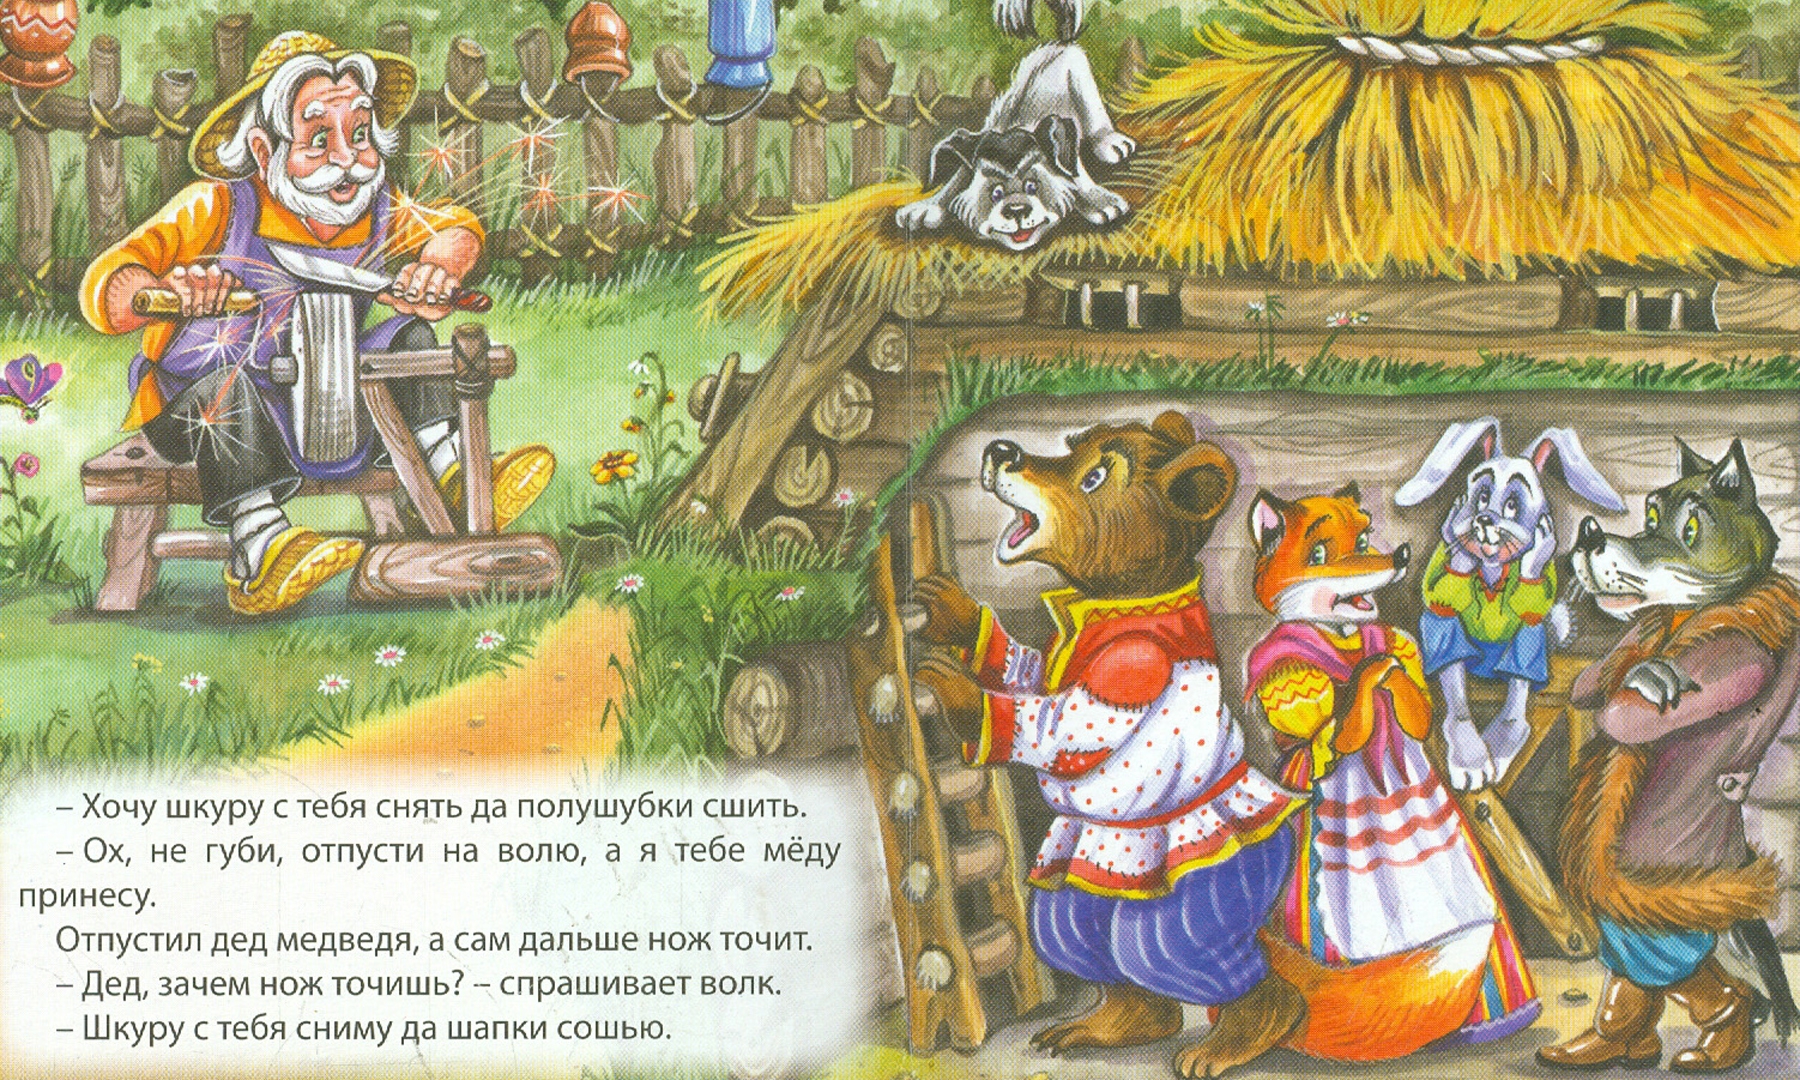 Бычок — смоляной бочок: русская народная сказка читать онлайн